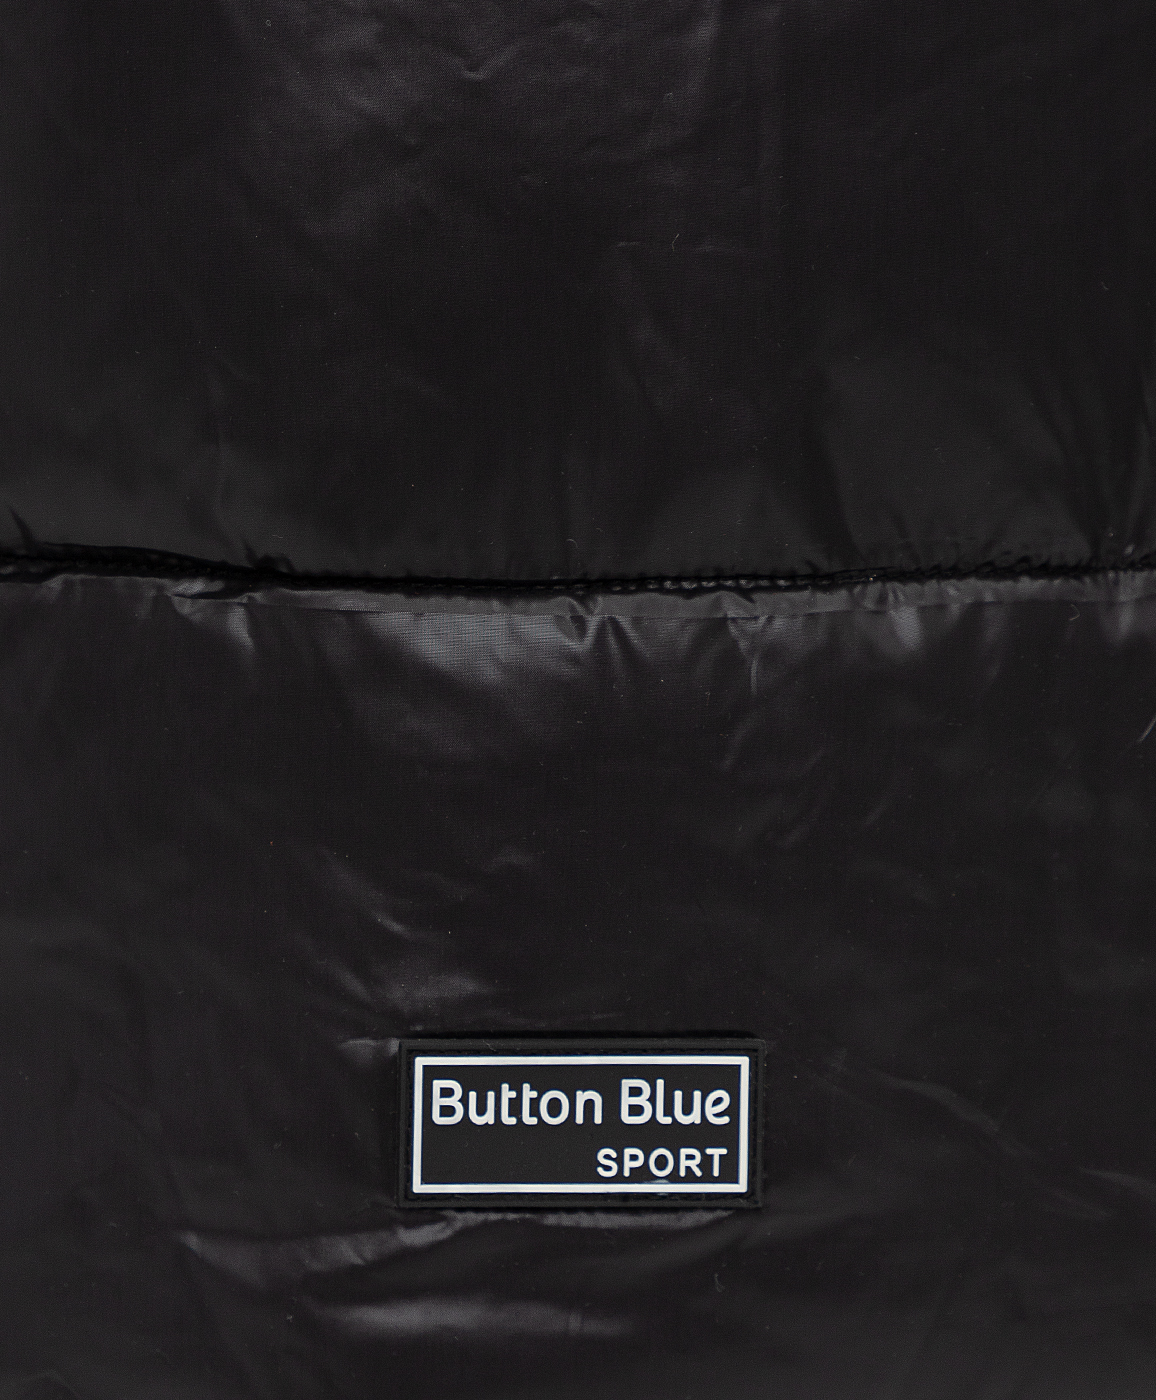 Полупальто демисезонное с капюшоном Button Blue 221BBBJC46010800, размер 146, цвет черный - фото 5